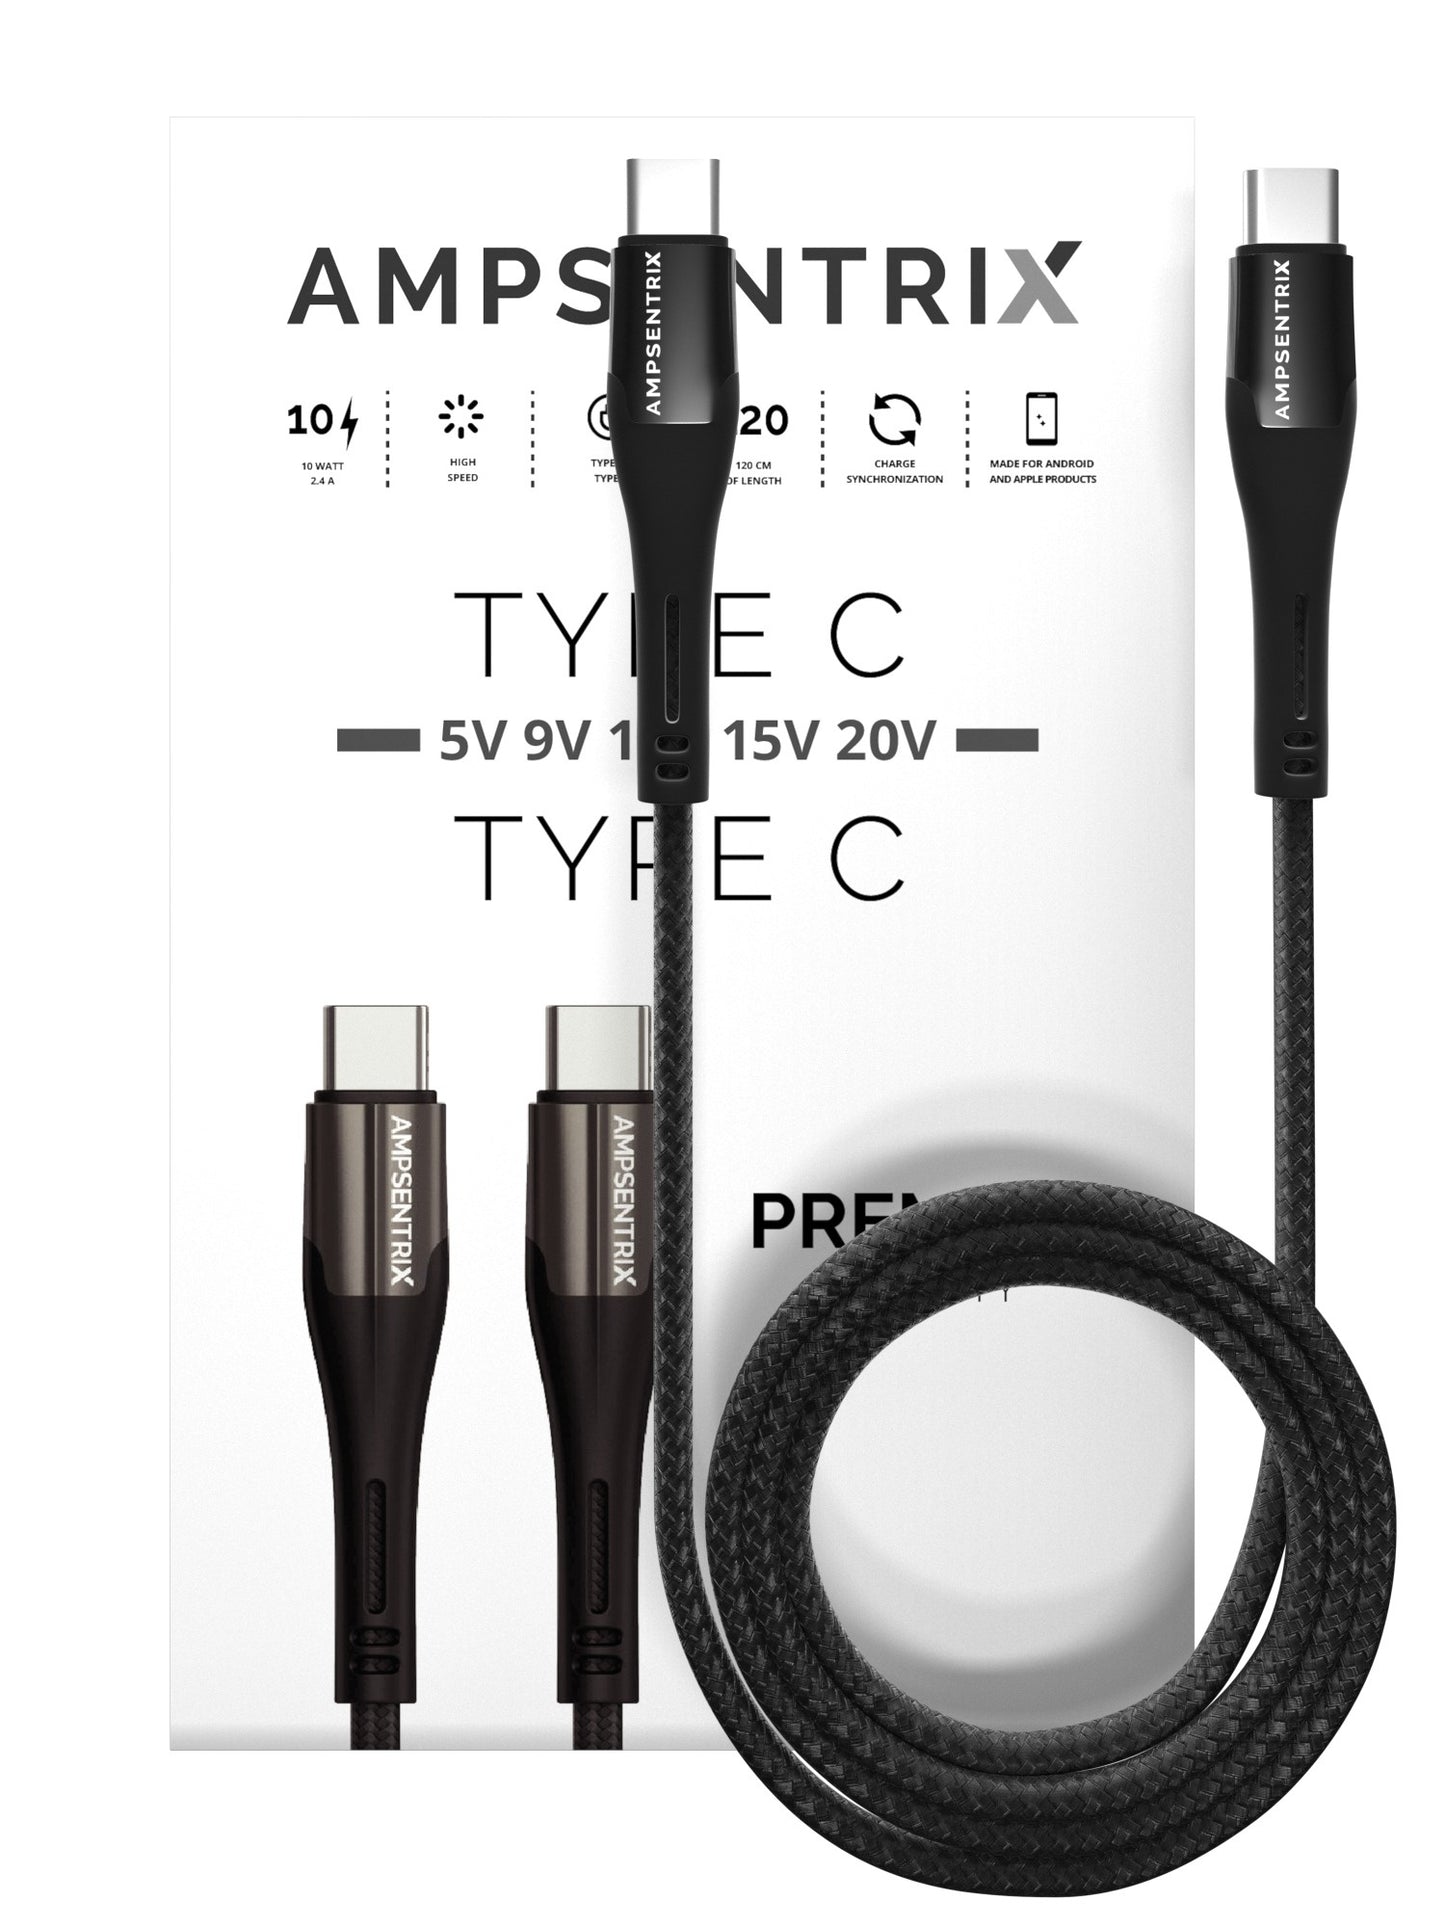 3 ft USB Type C to USB Type C Cable (AmpSentrix) (Infinity) (Black)